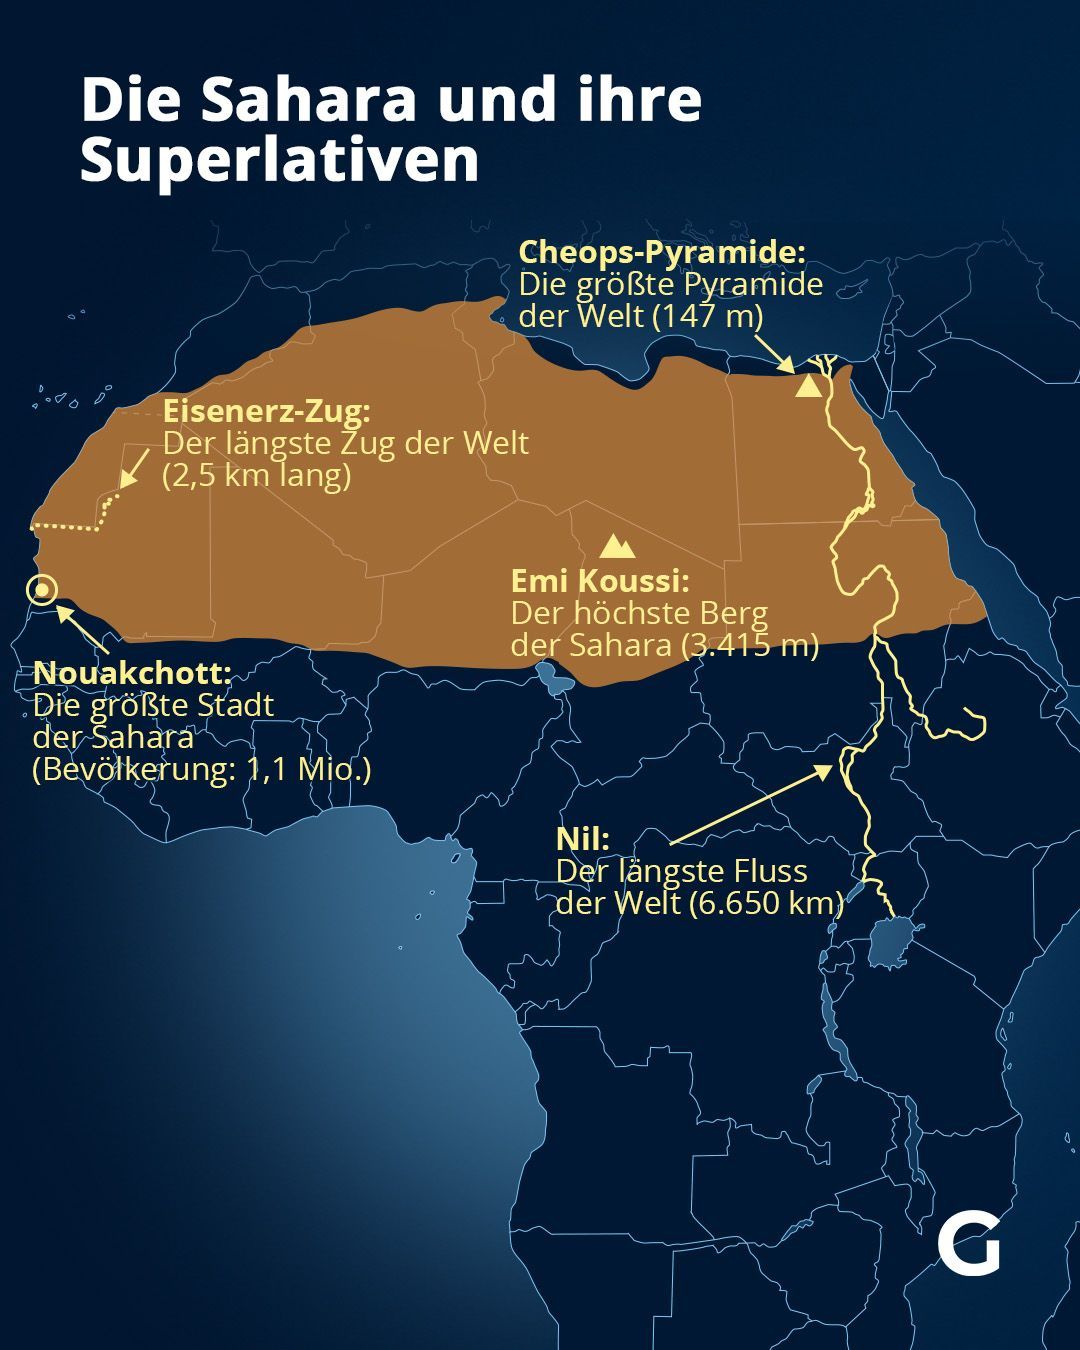 Die Sahara und ihre Superlativen